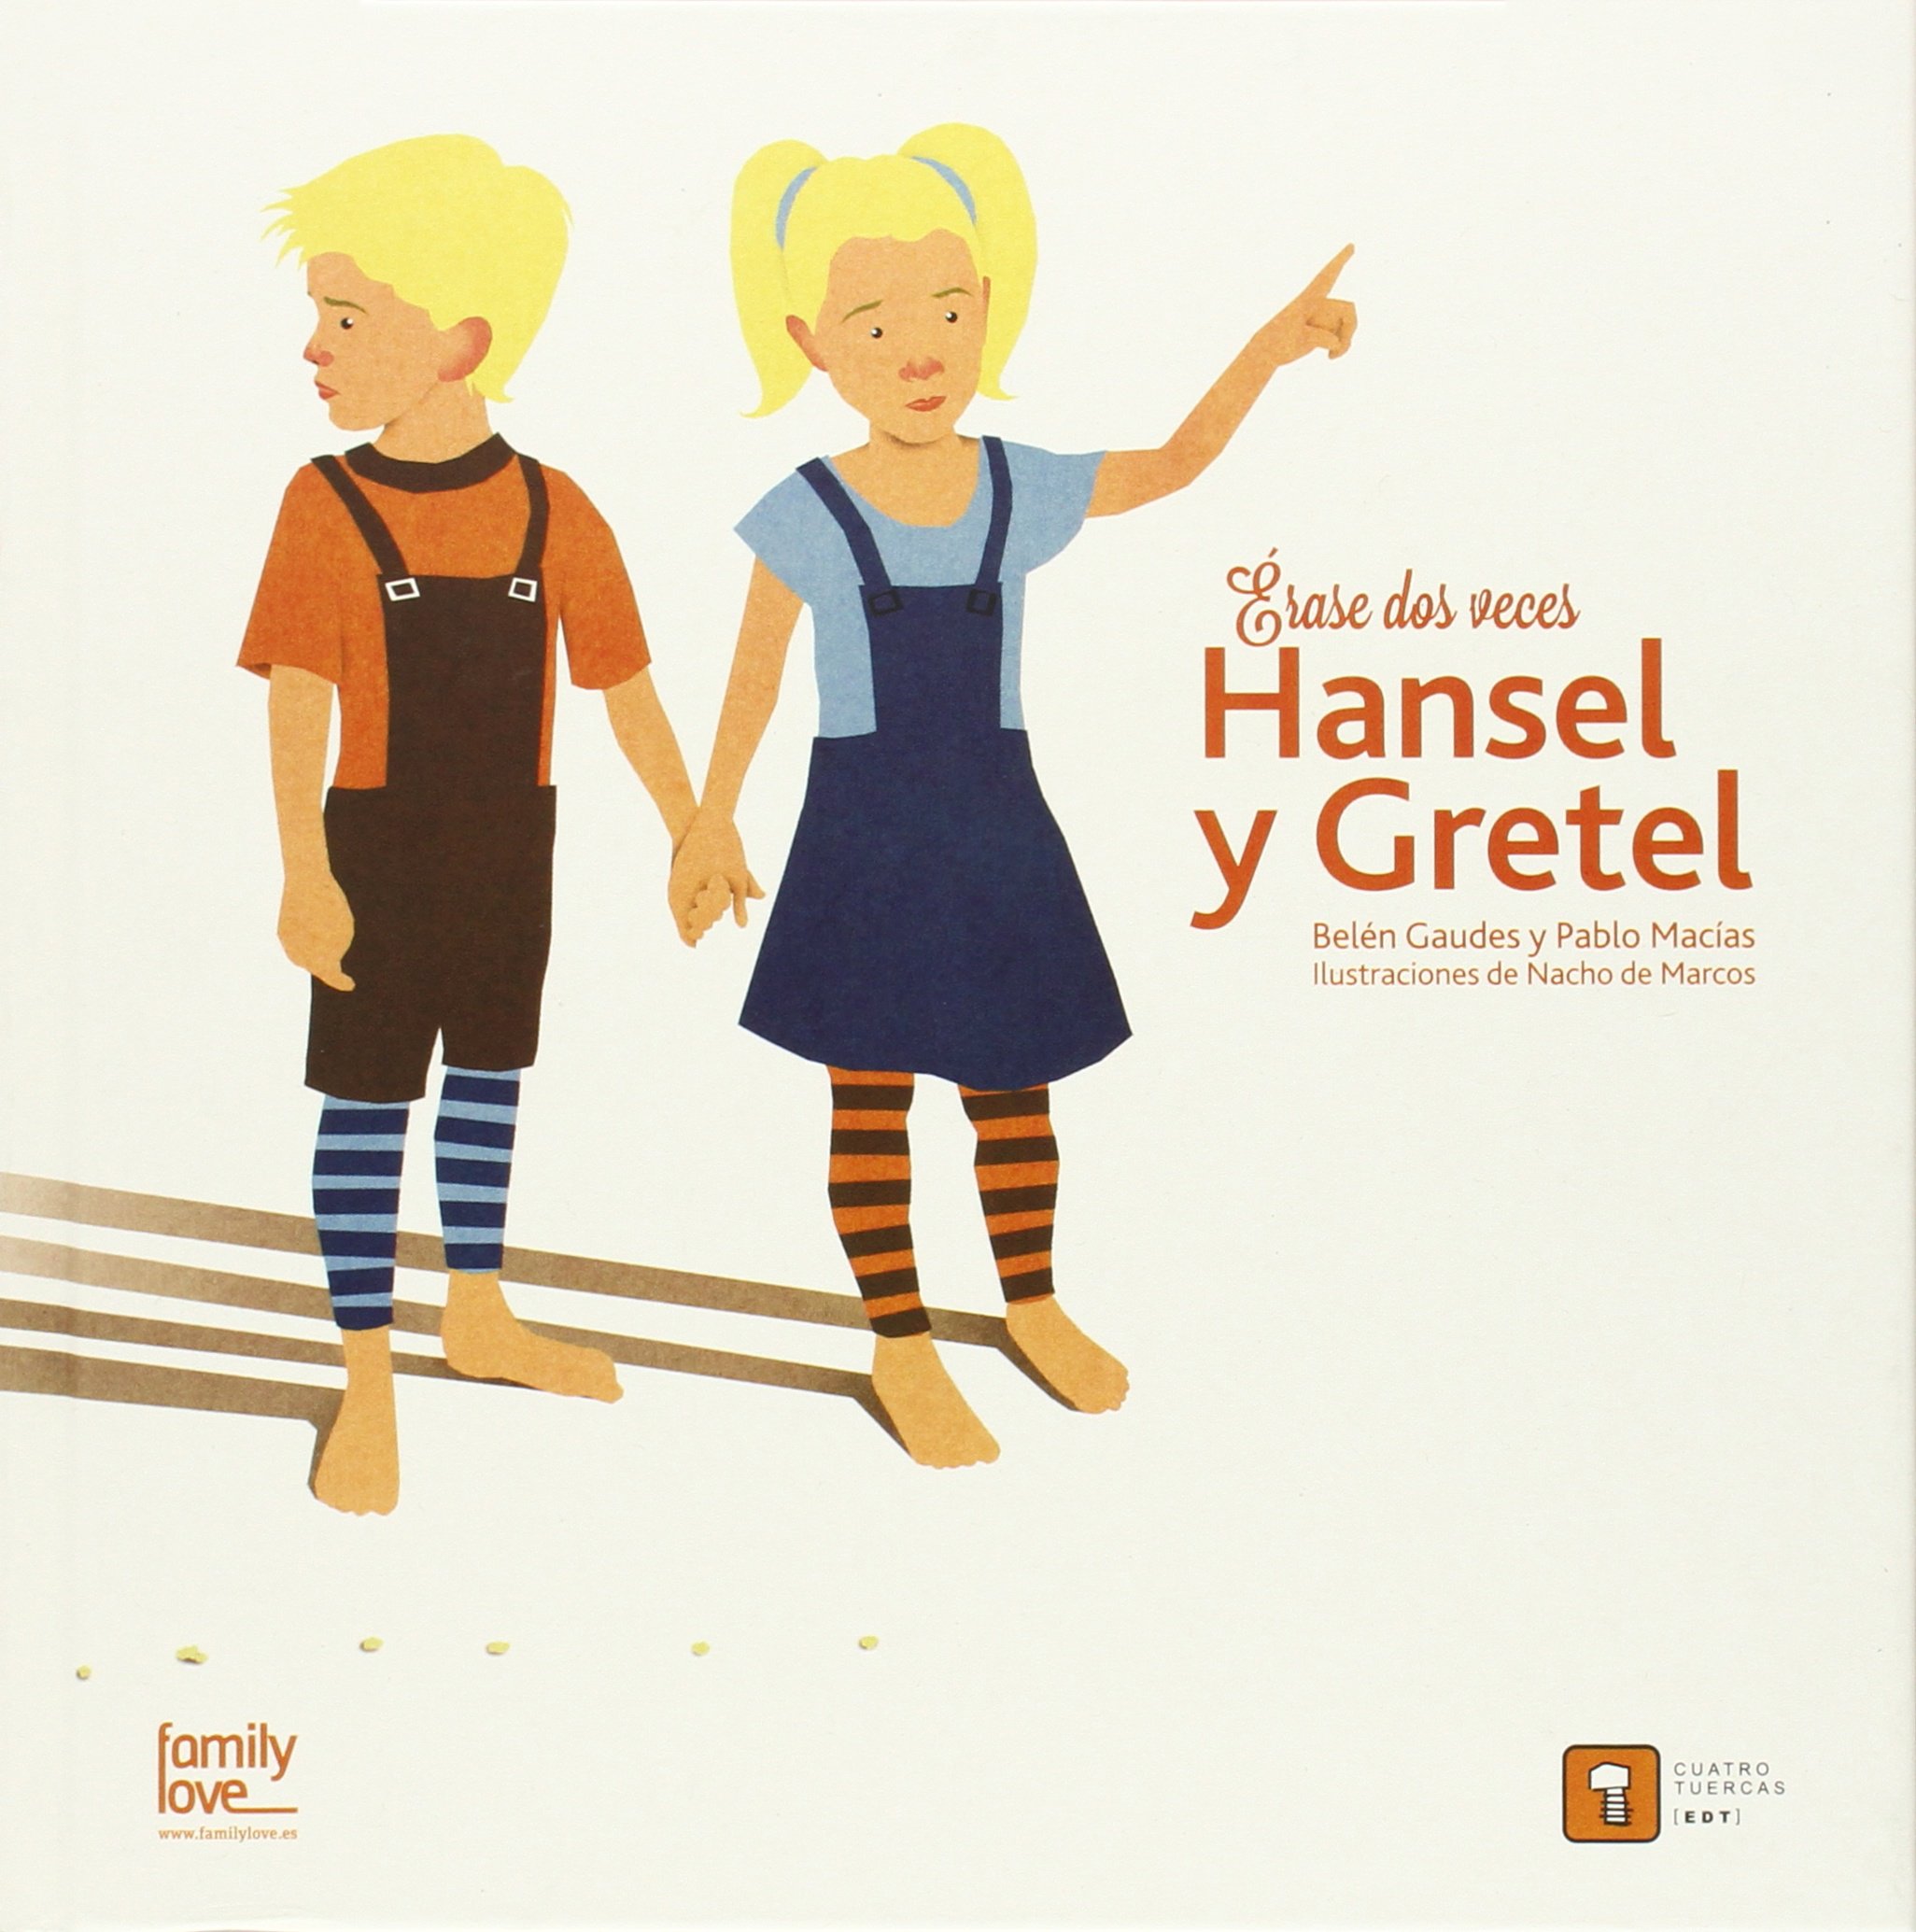 Erase dos veces… Hansel y Gretel